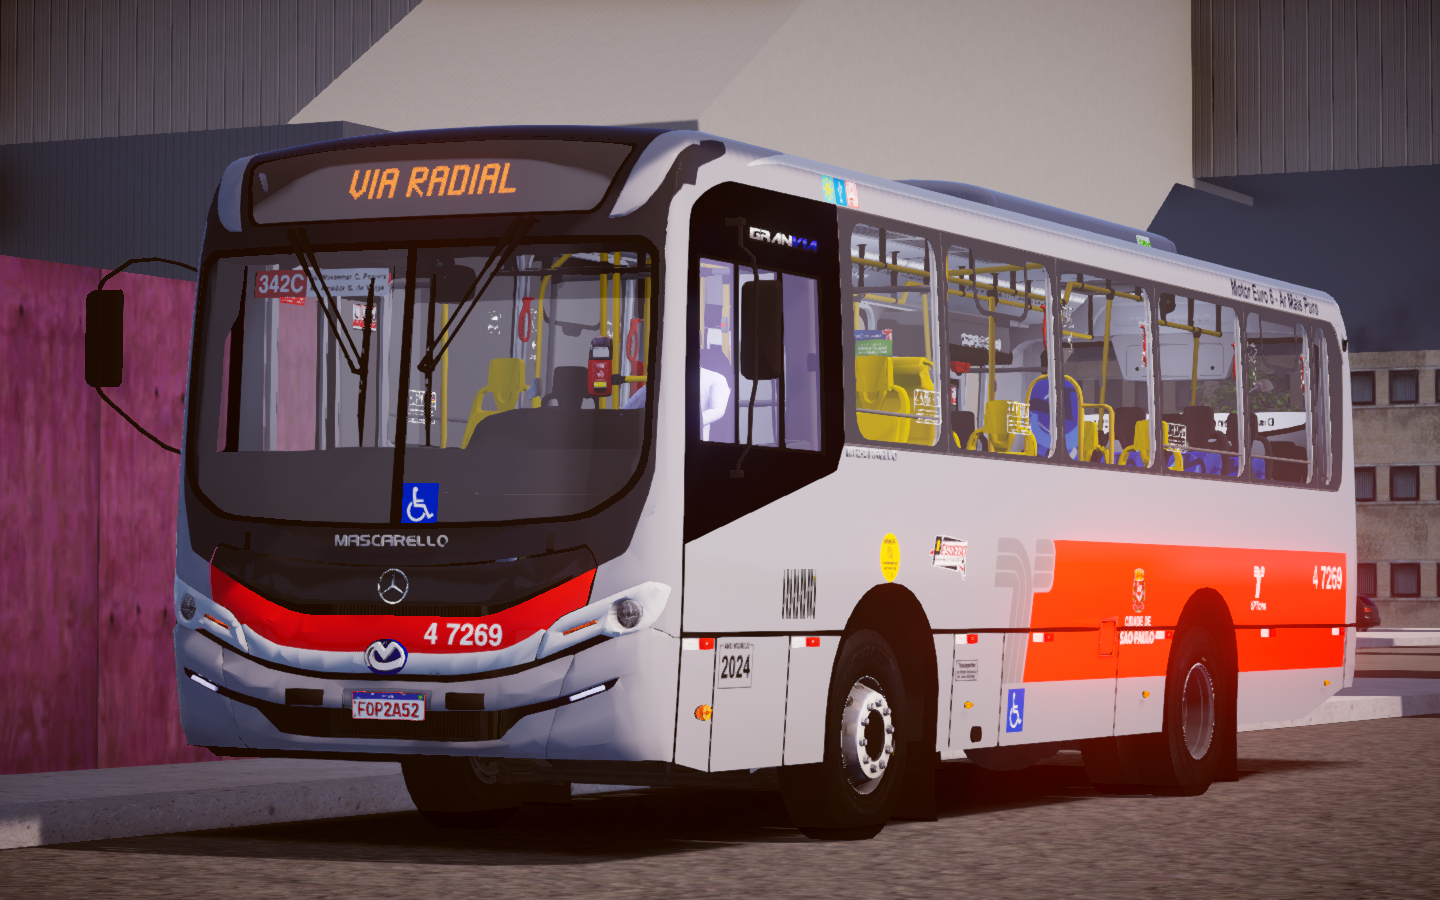 Novo jogo de ônibus brasileiros para Android, Bus Simulator Brasil:  confira! - JV Plays